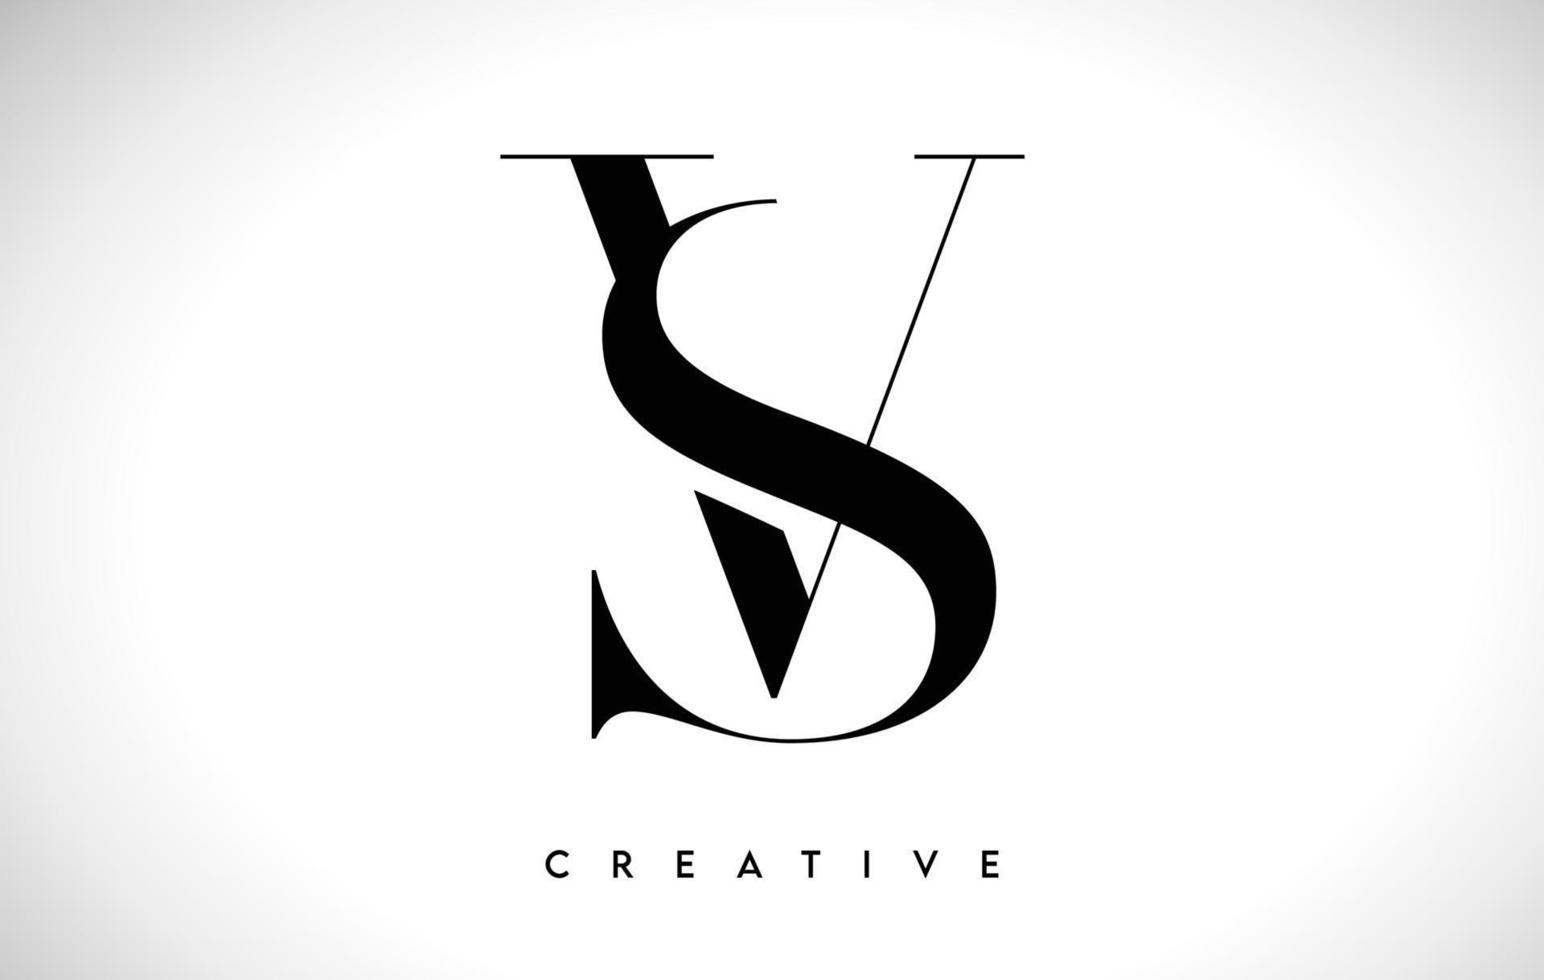 sv design de logotipo de carta artística com fonte serif em cores preto e branco ilustração vetorial vetor